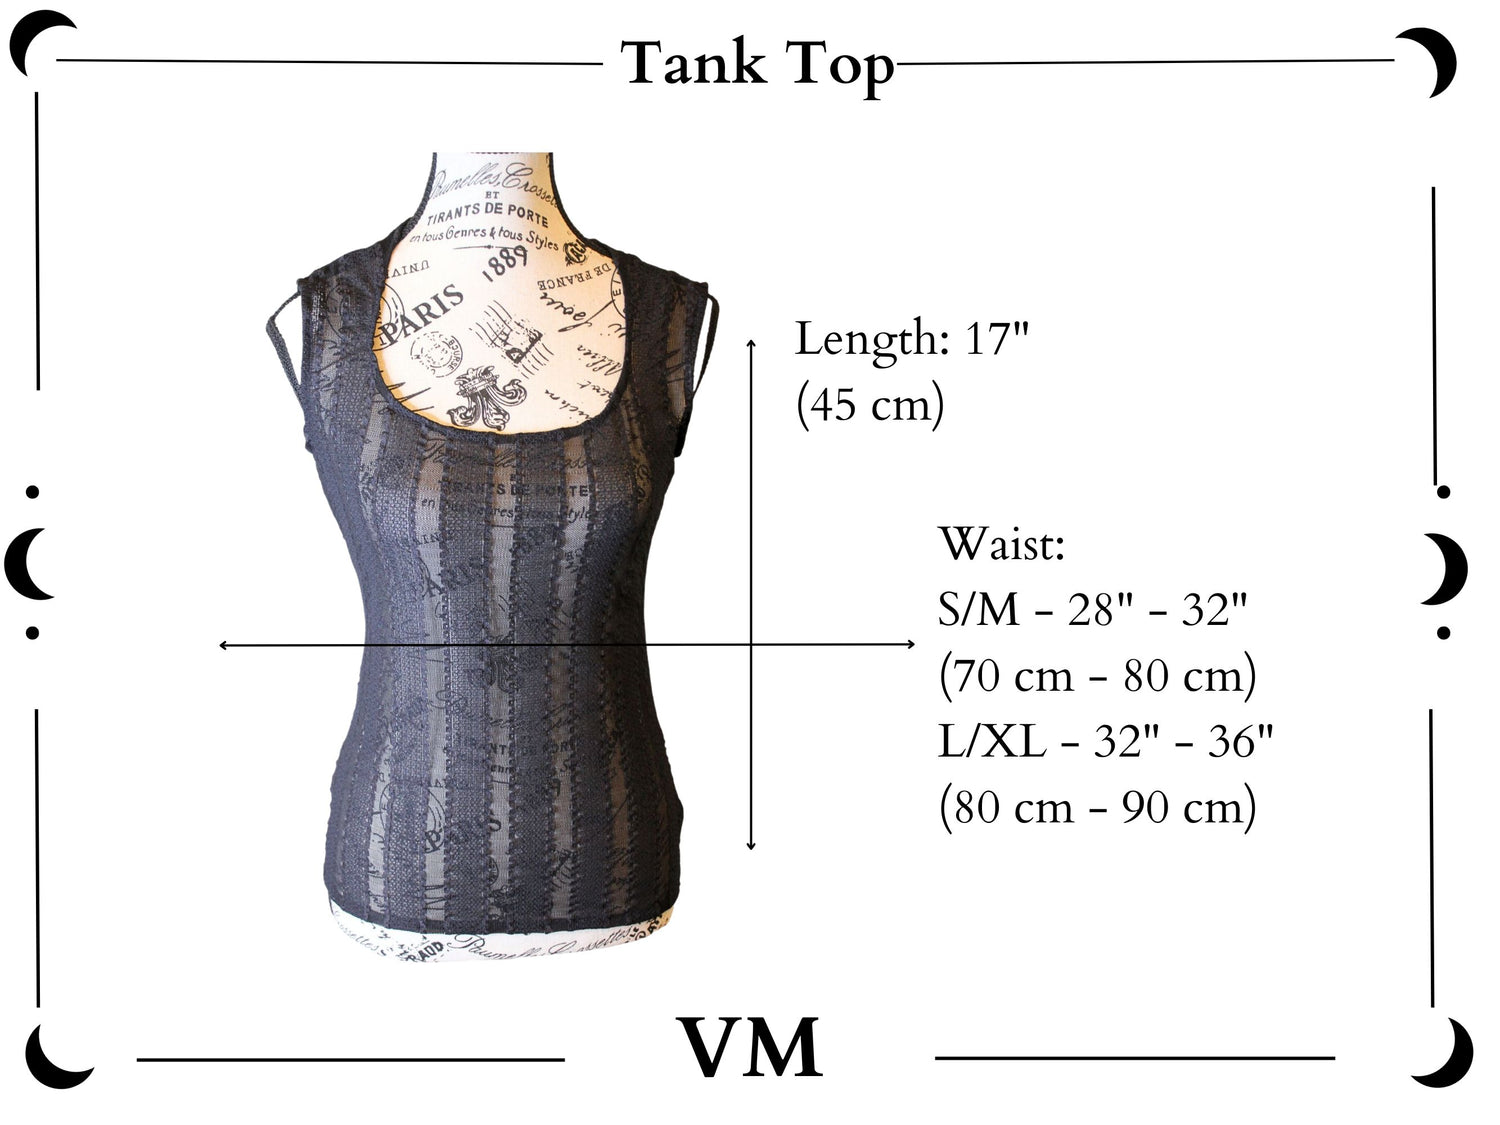 The VM Velvet Tank – Venus & Mars Clothing